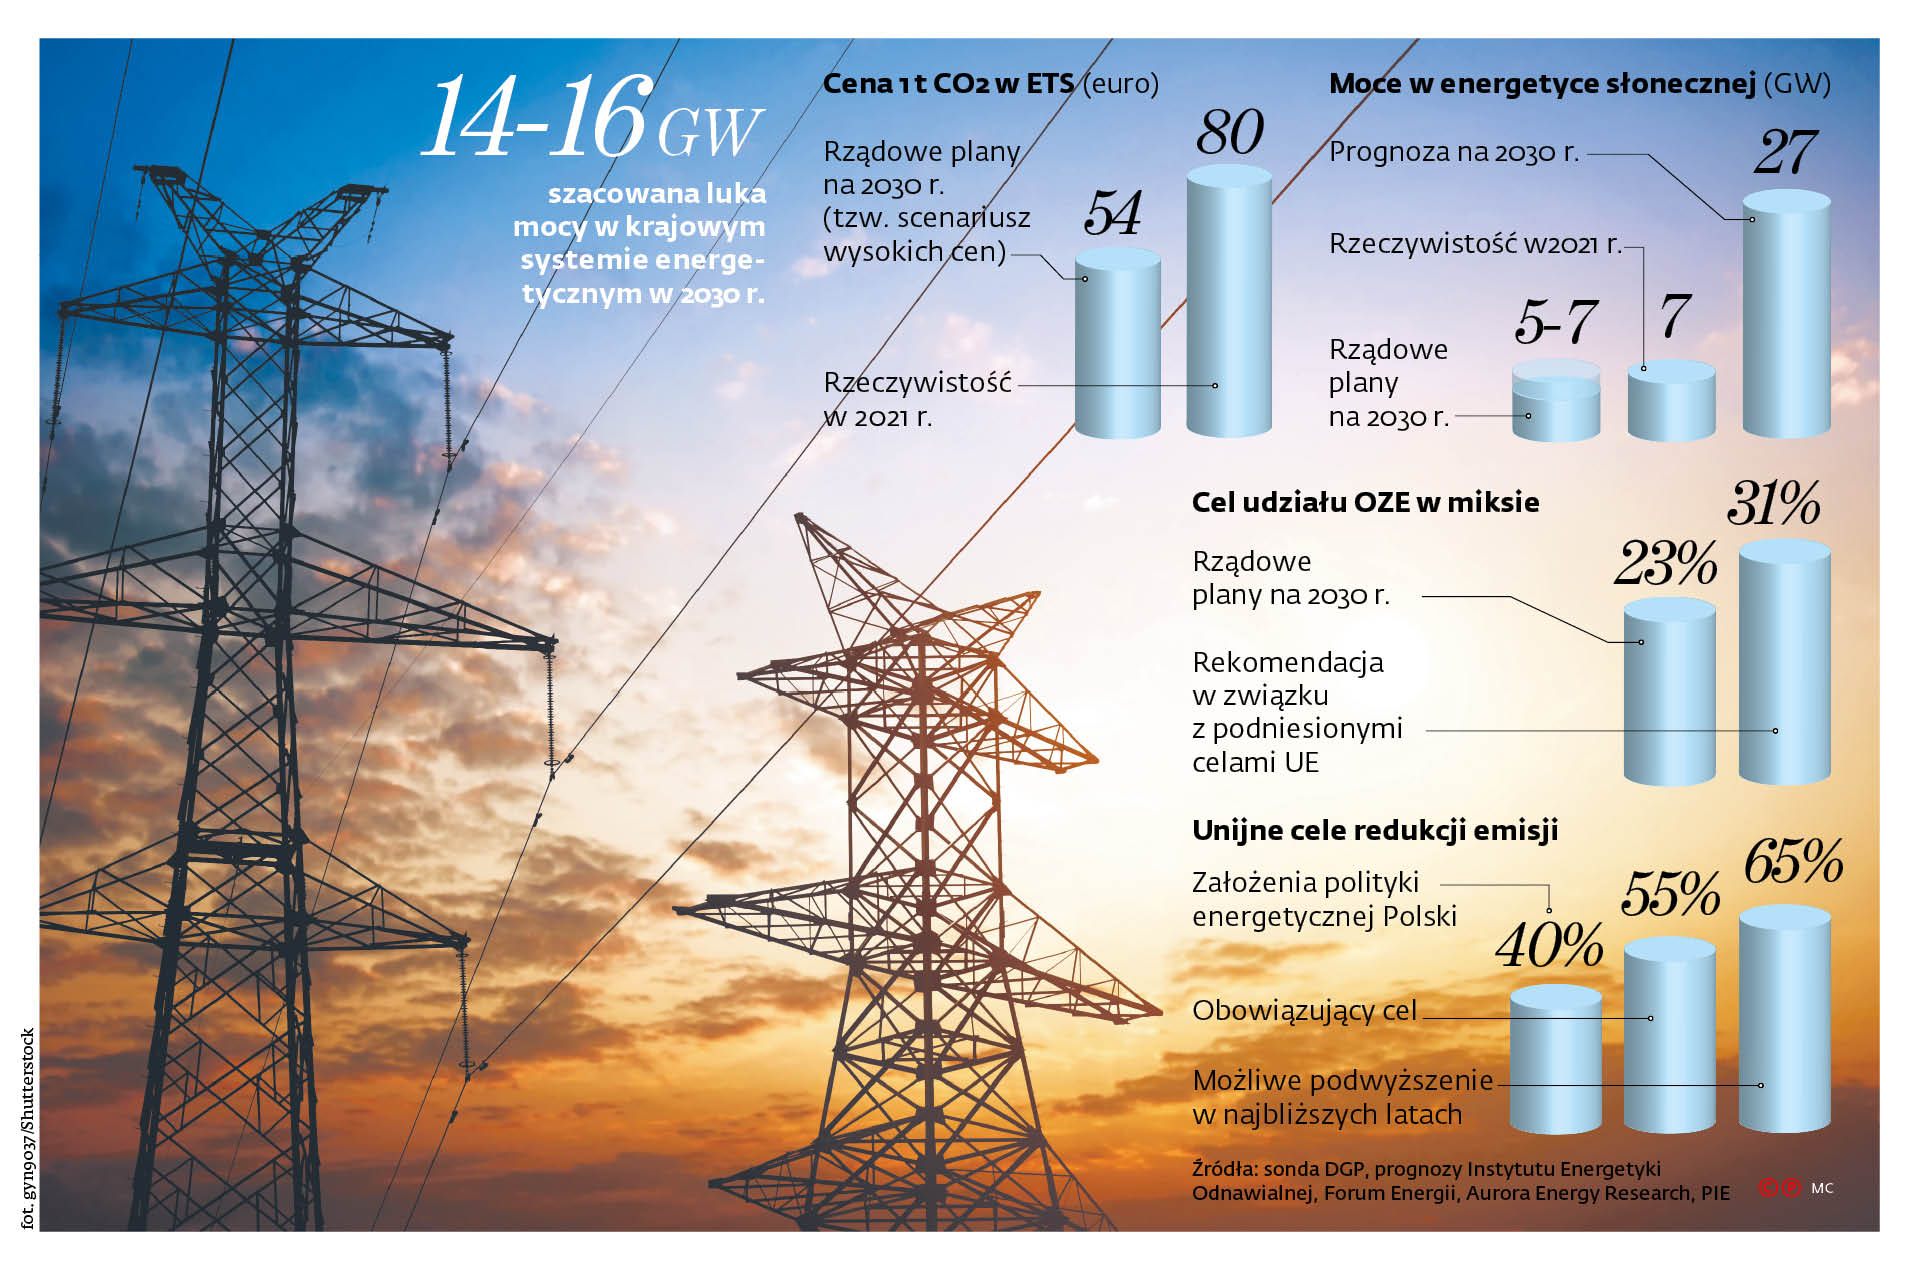 14-16 GW szacowana luka mocy w krajowym systemie energetycznym w 2030 r.